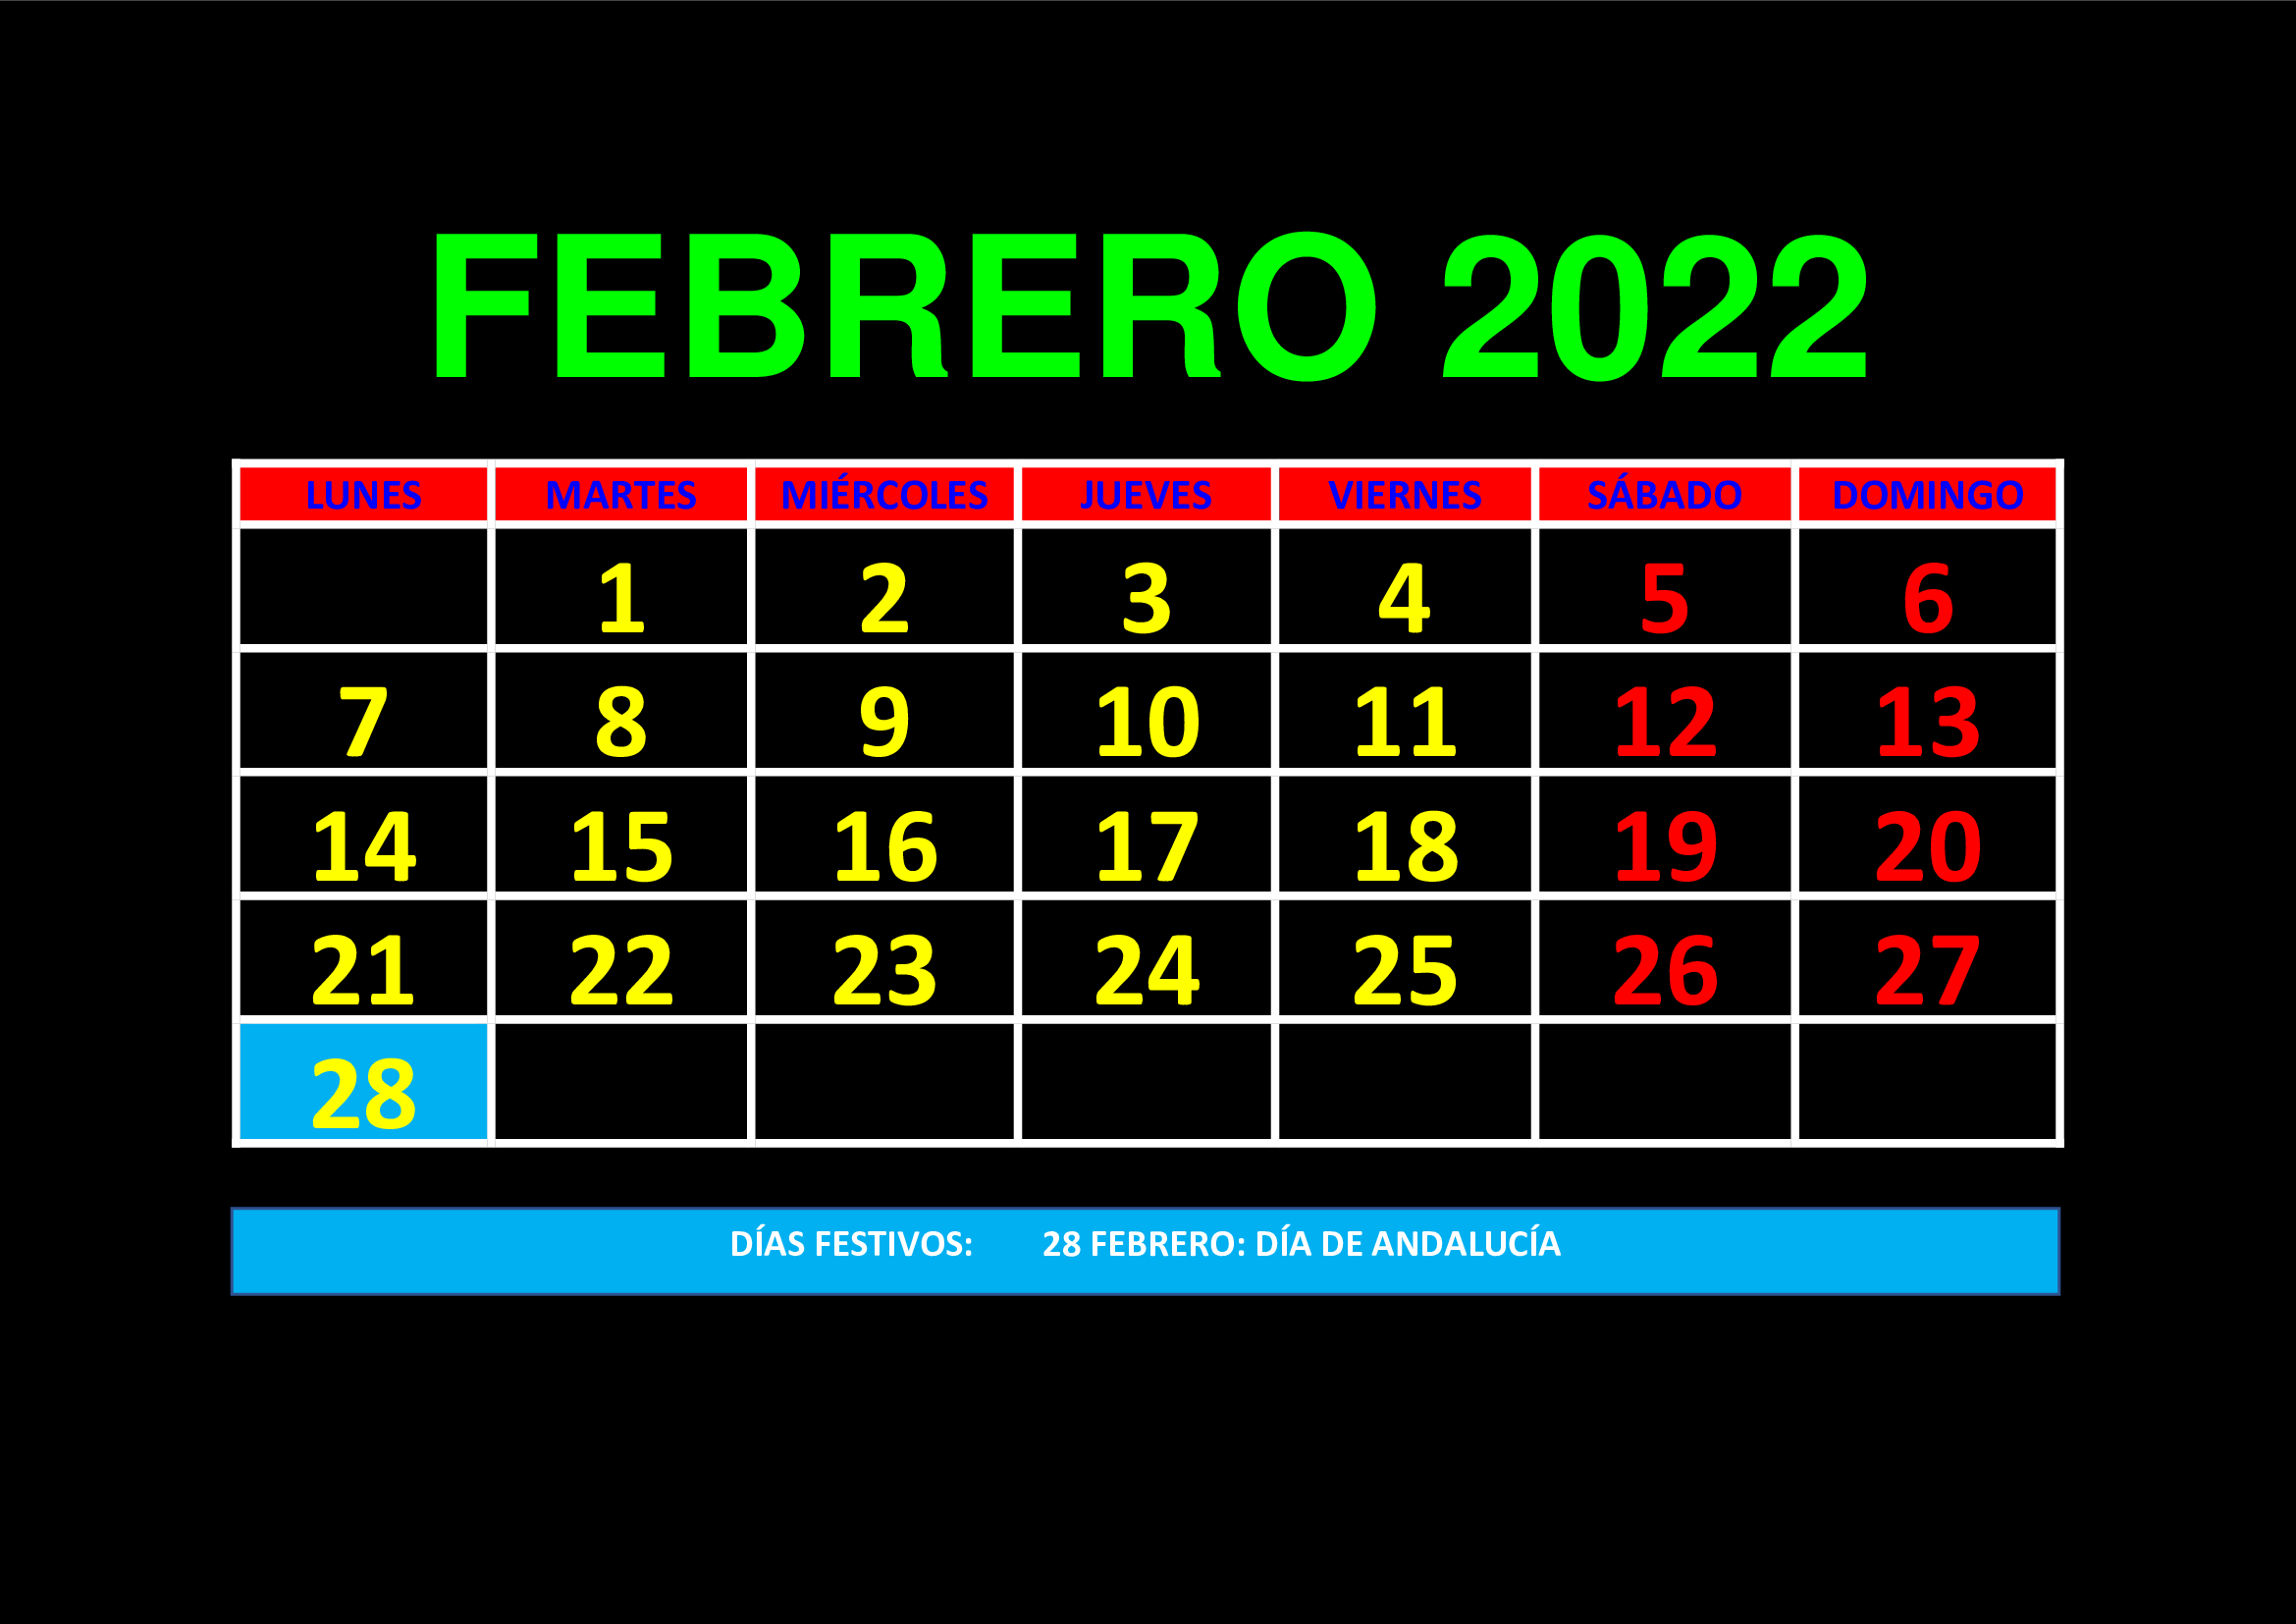 La imagen muestra el mes de febrero de 2022